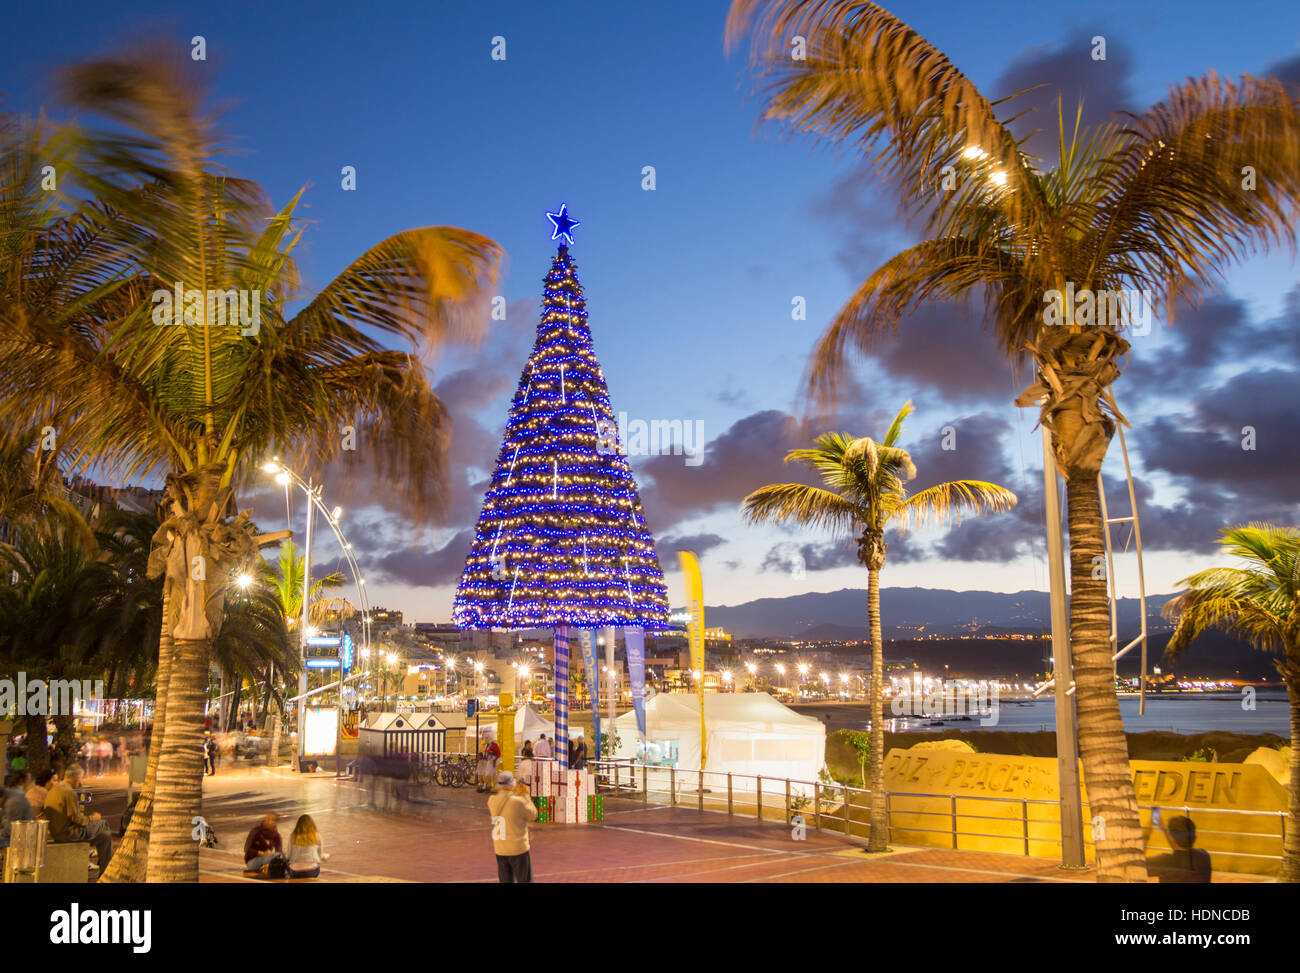 Las Palmas de Gran Canaria, Isole Canarie, Spagna. Il 14 dicembre, 2016.  Meteo: un mite 22 gradi Celsius al tramonto come la spiaggia della città  albero di Natale le luci vengono accese